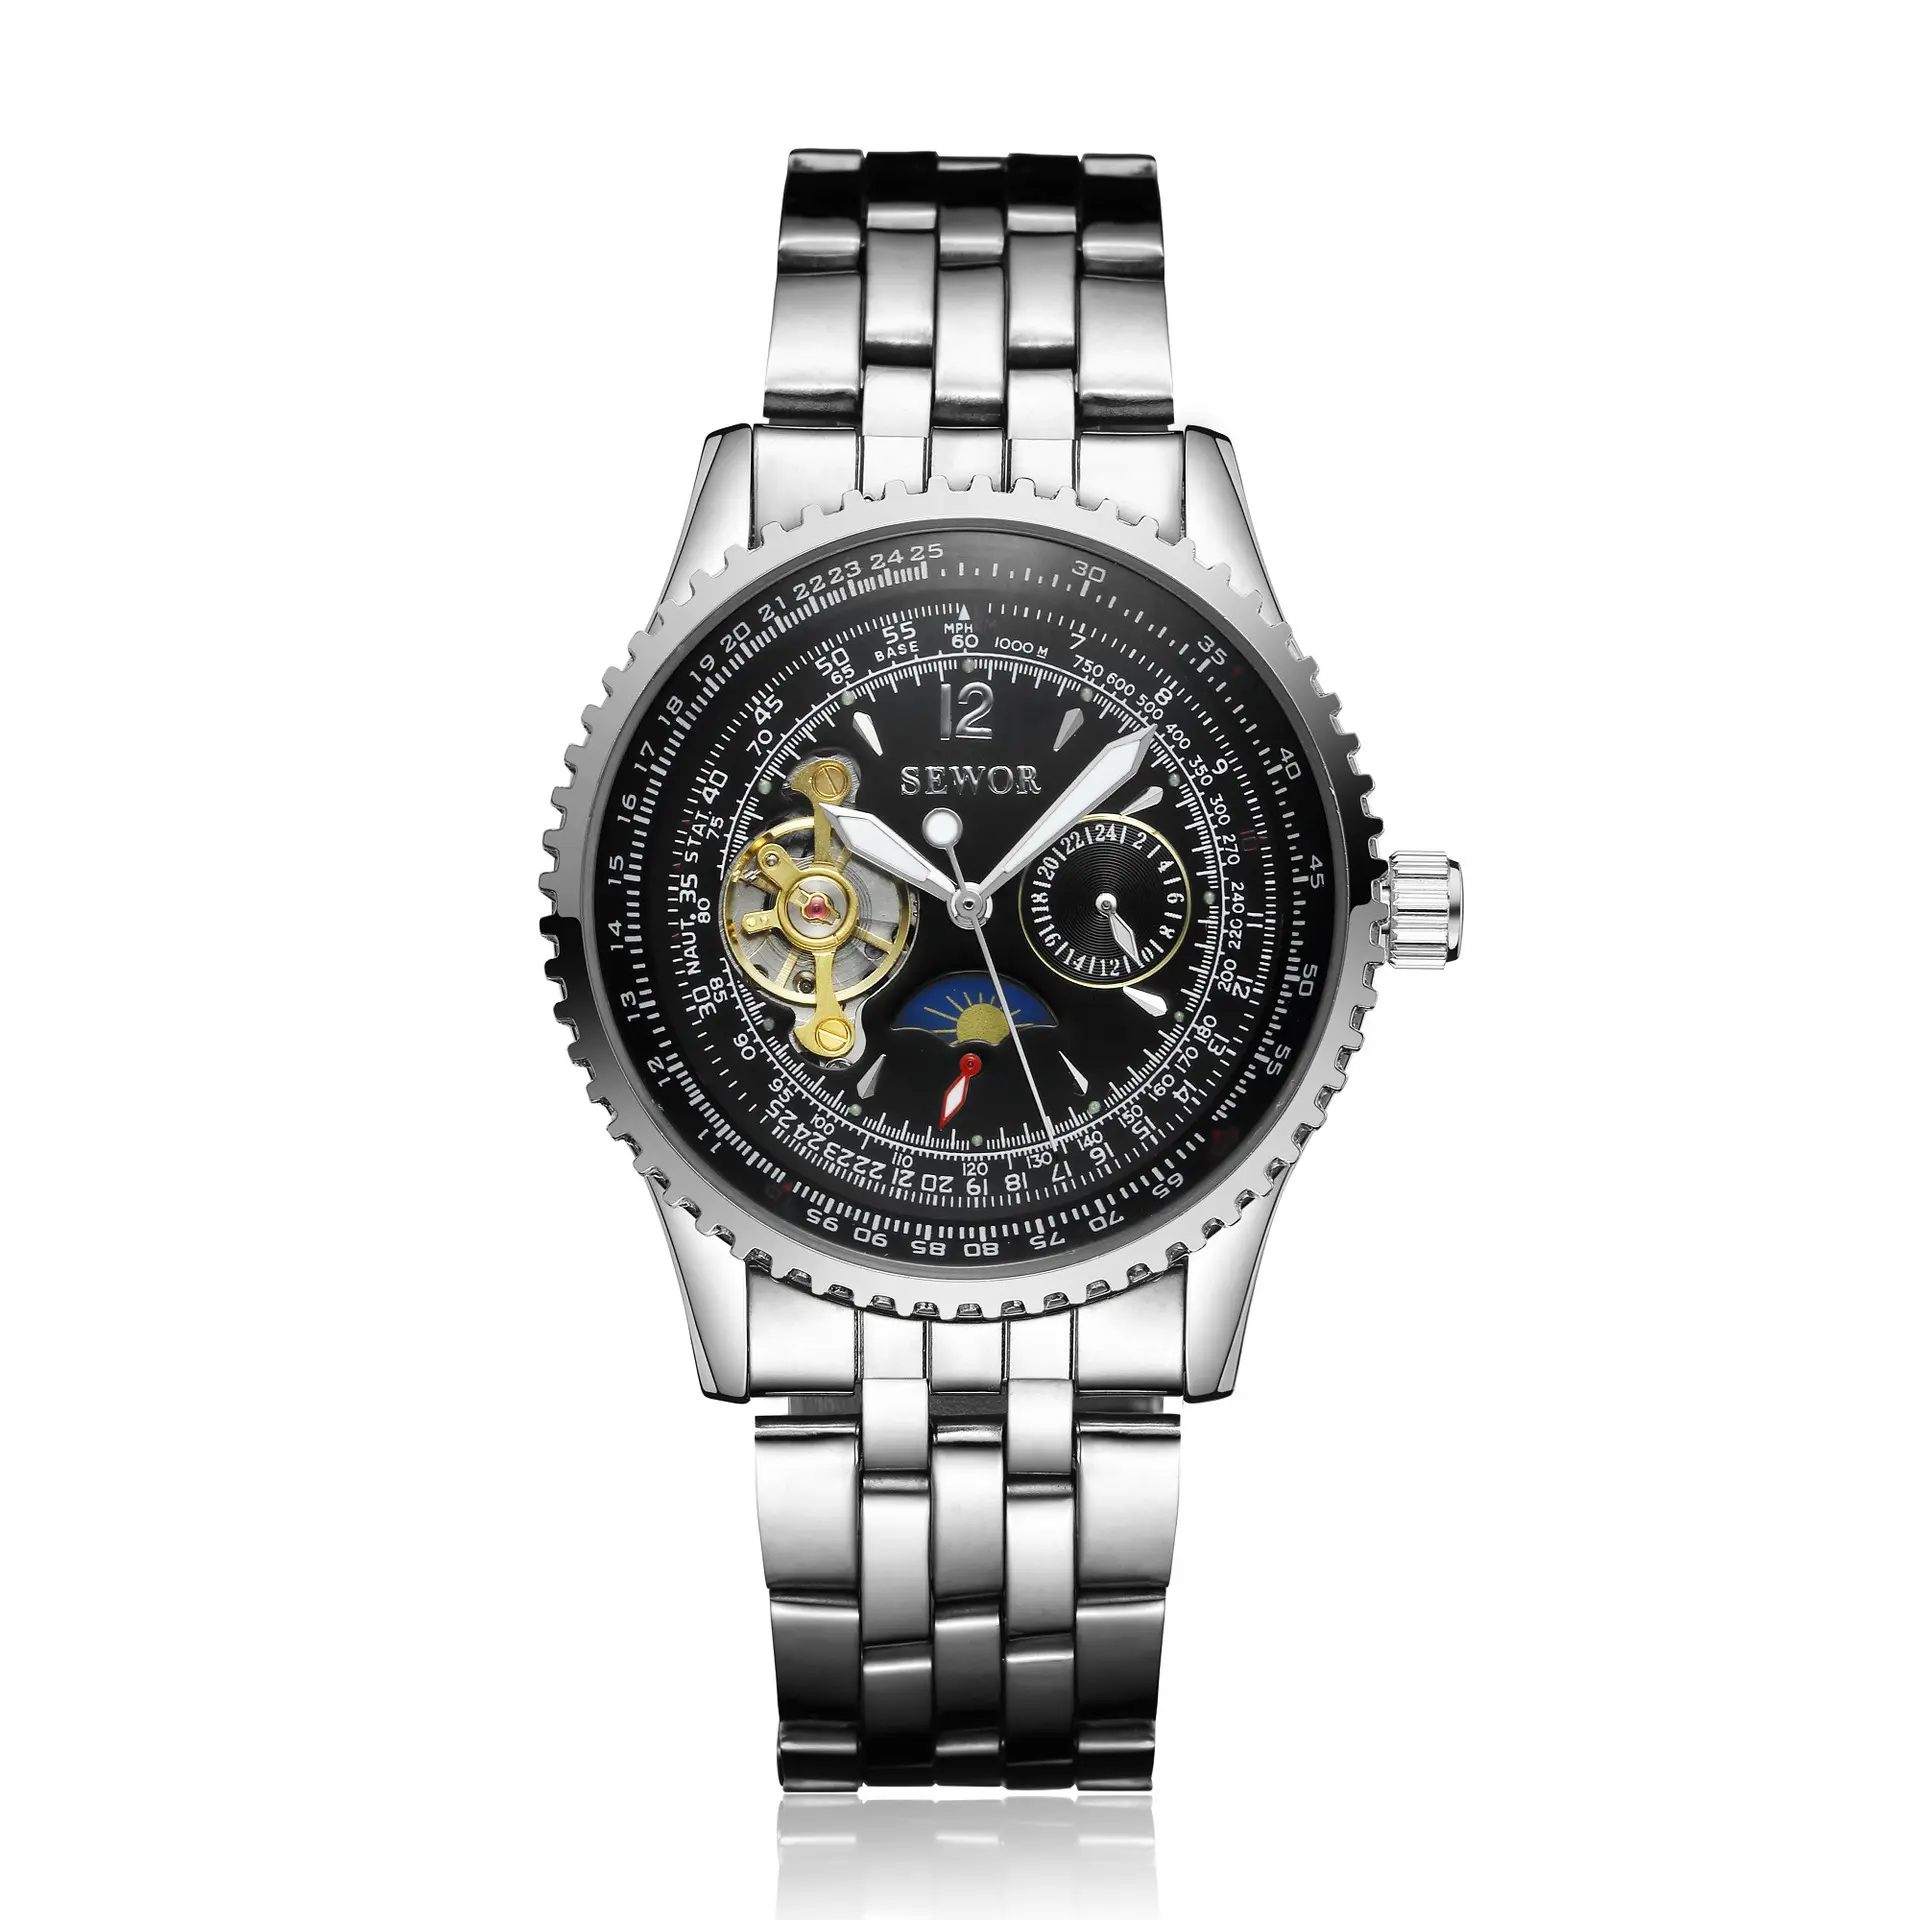 SEWOR Multifunktion ale Mondphase mit großem Zifferblatt Tourbillon Skeleton Mechanical Watch Man Cool und modisch